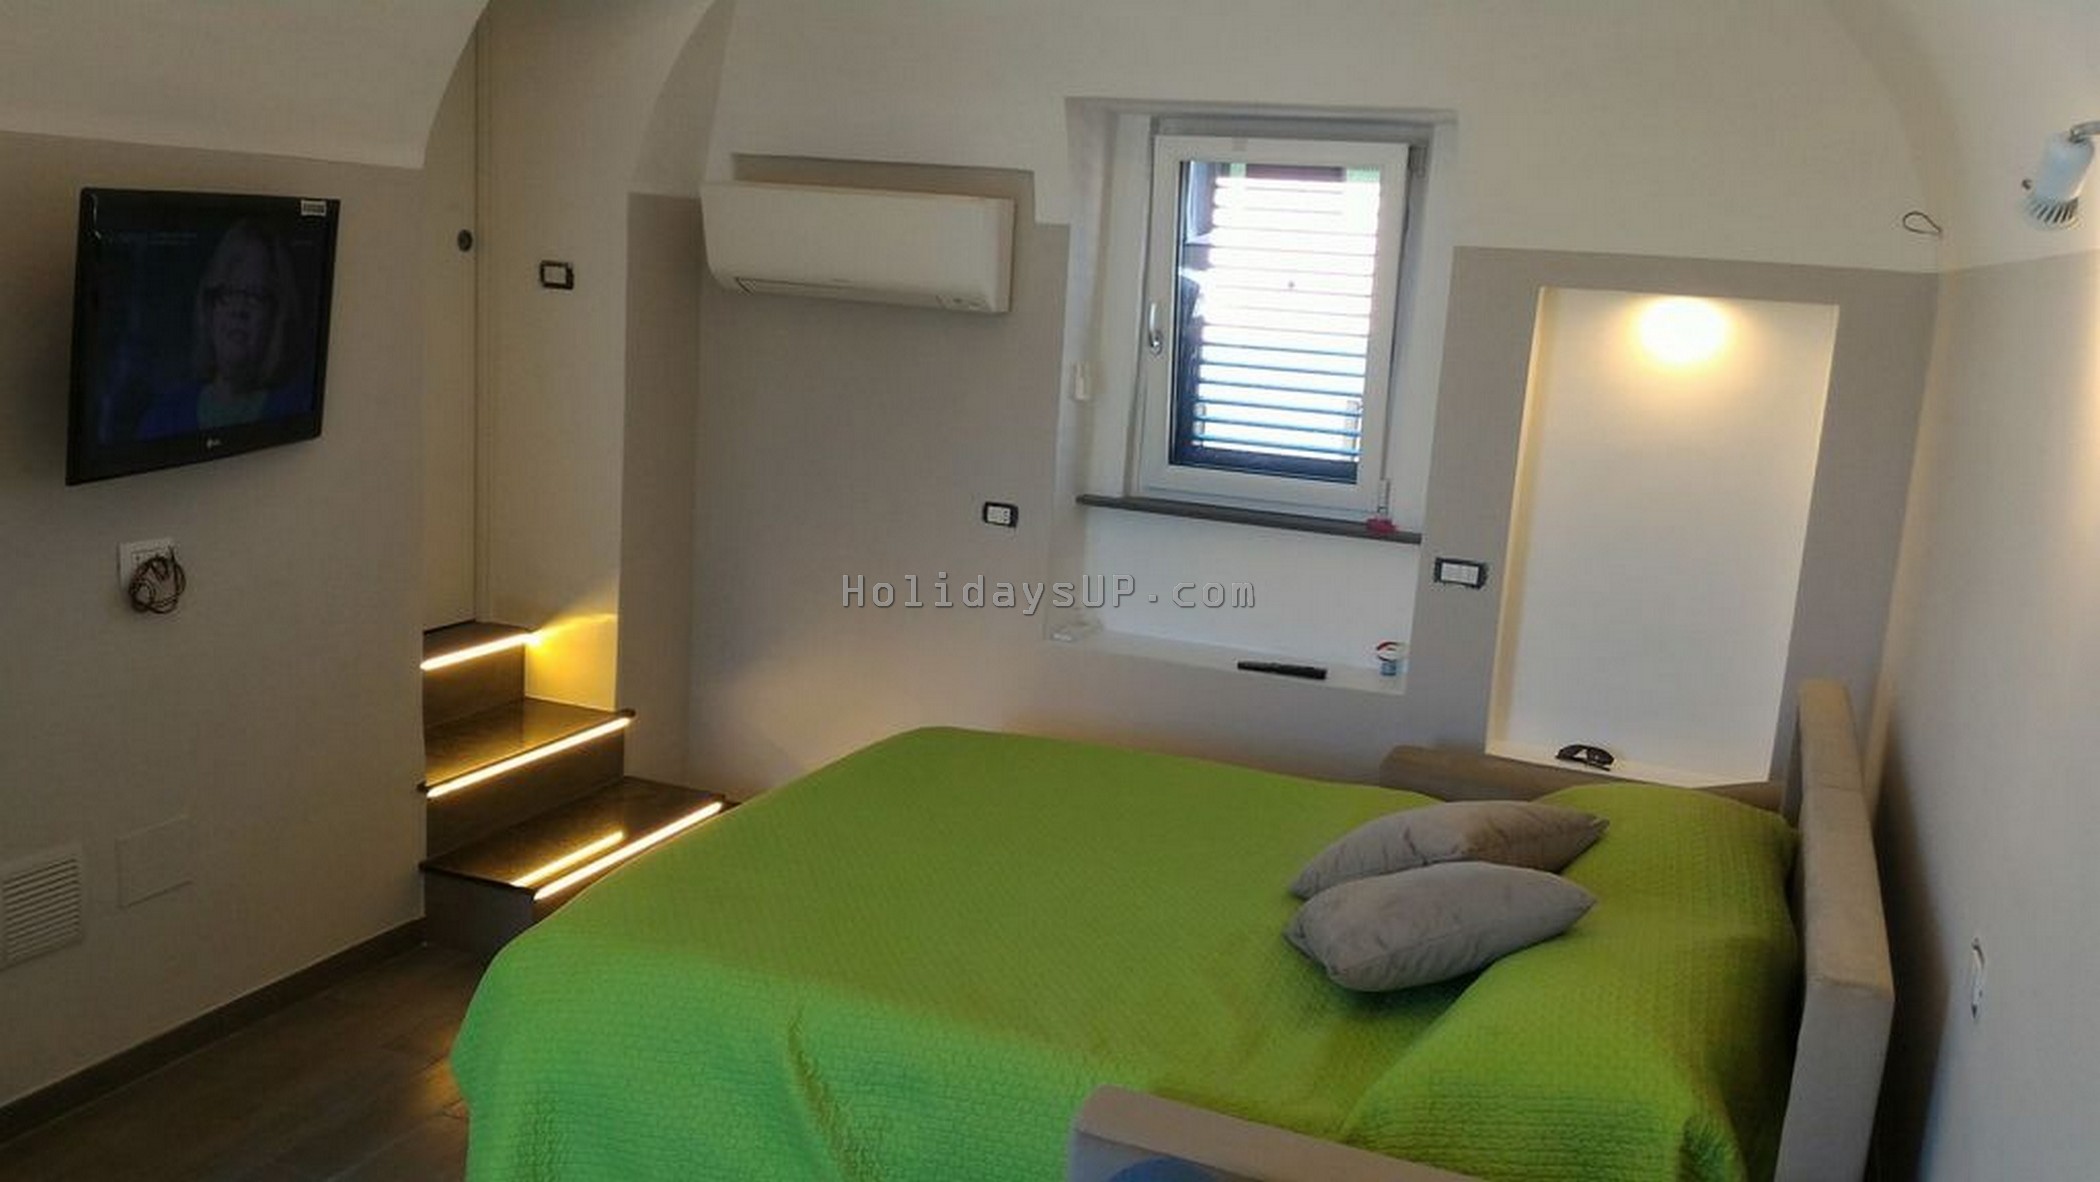 Barone suite room in Villa historic Villa located in a small village Schiazzano